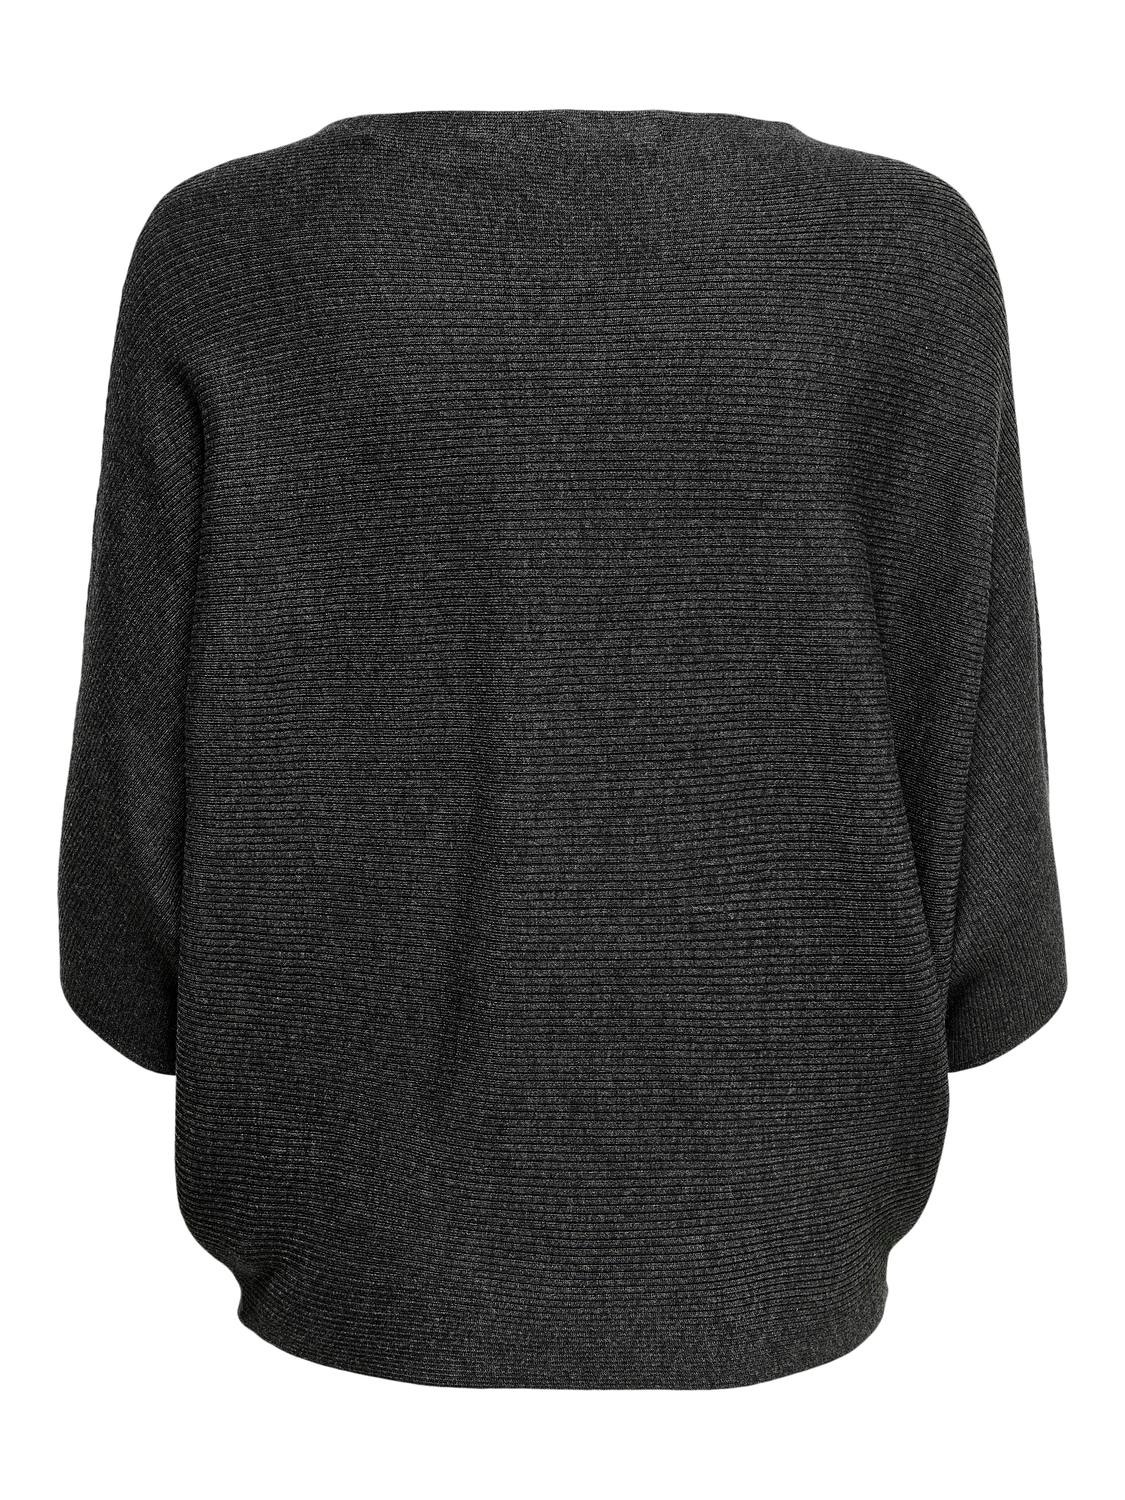 ONLY Boothals Verlaagde schoudernaden Pullover -Dark Grey Melange - 15181237